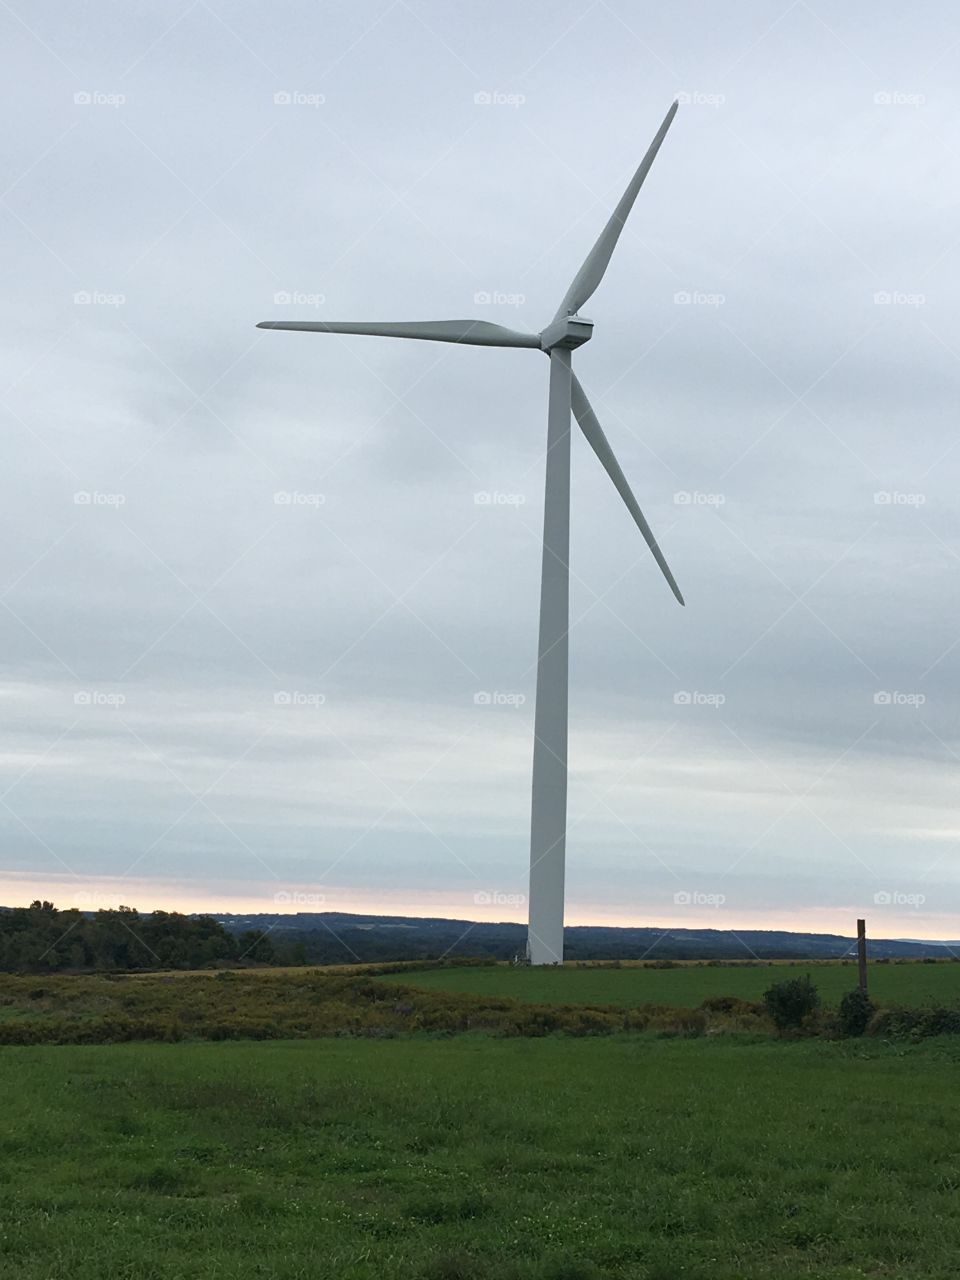 Wind power. Letchworth, New York